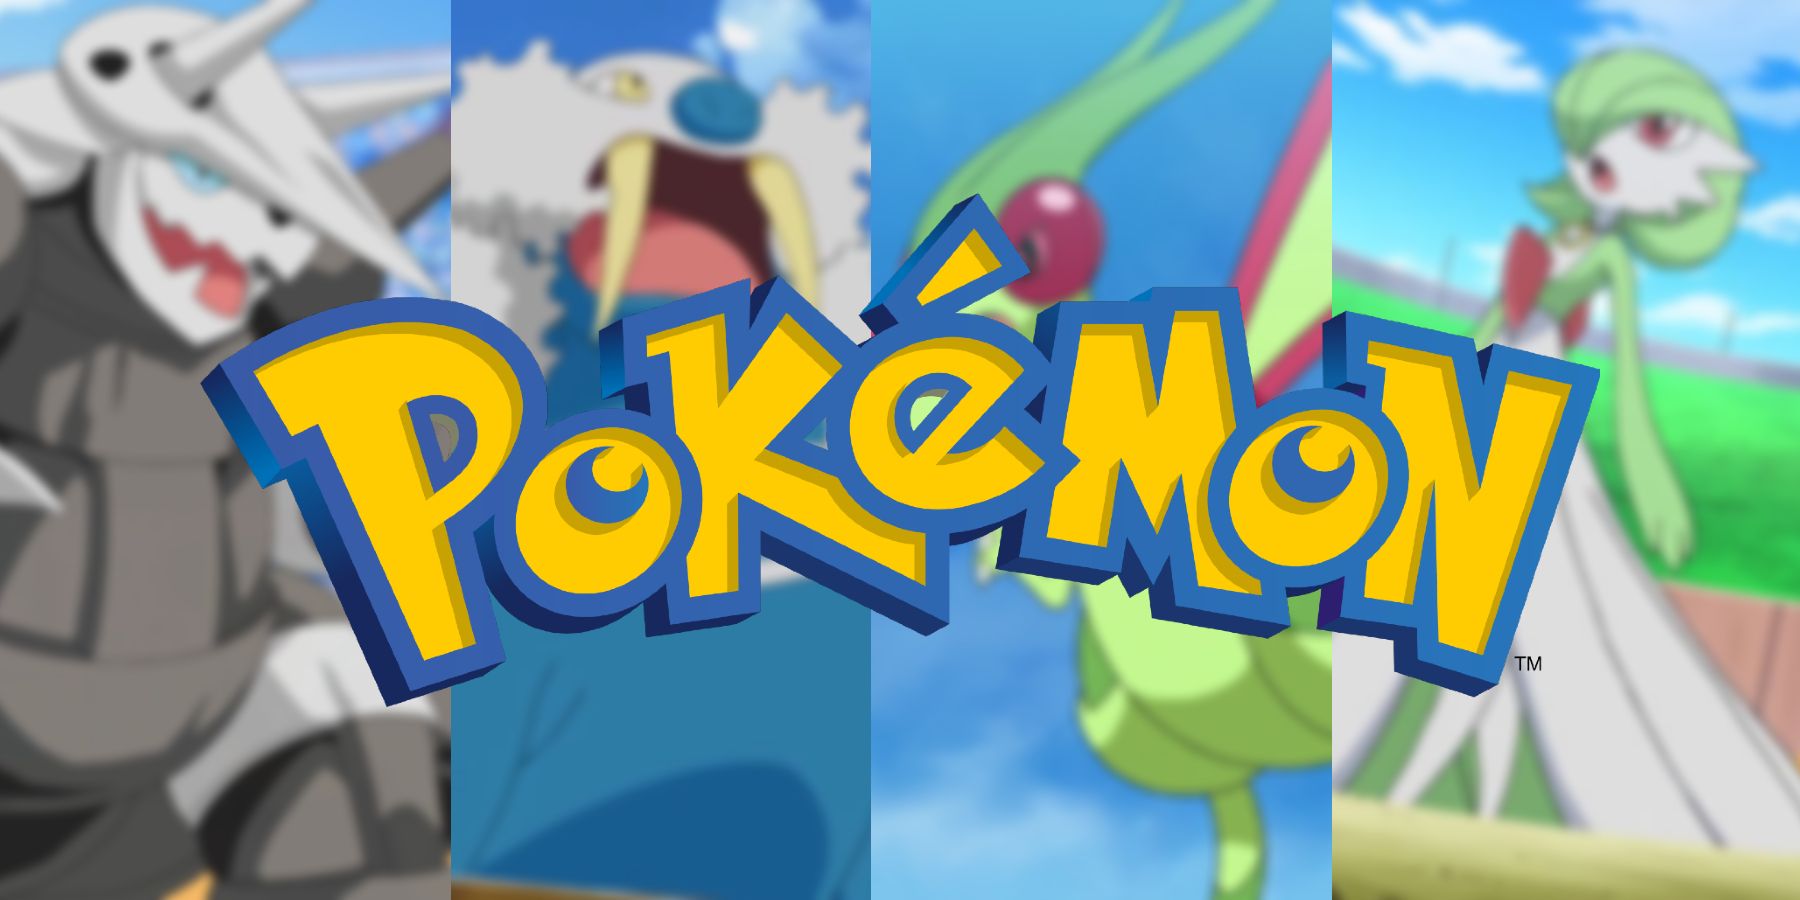 Pokémon Pokédex 3rd Generation Hoenn